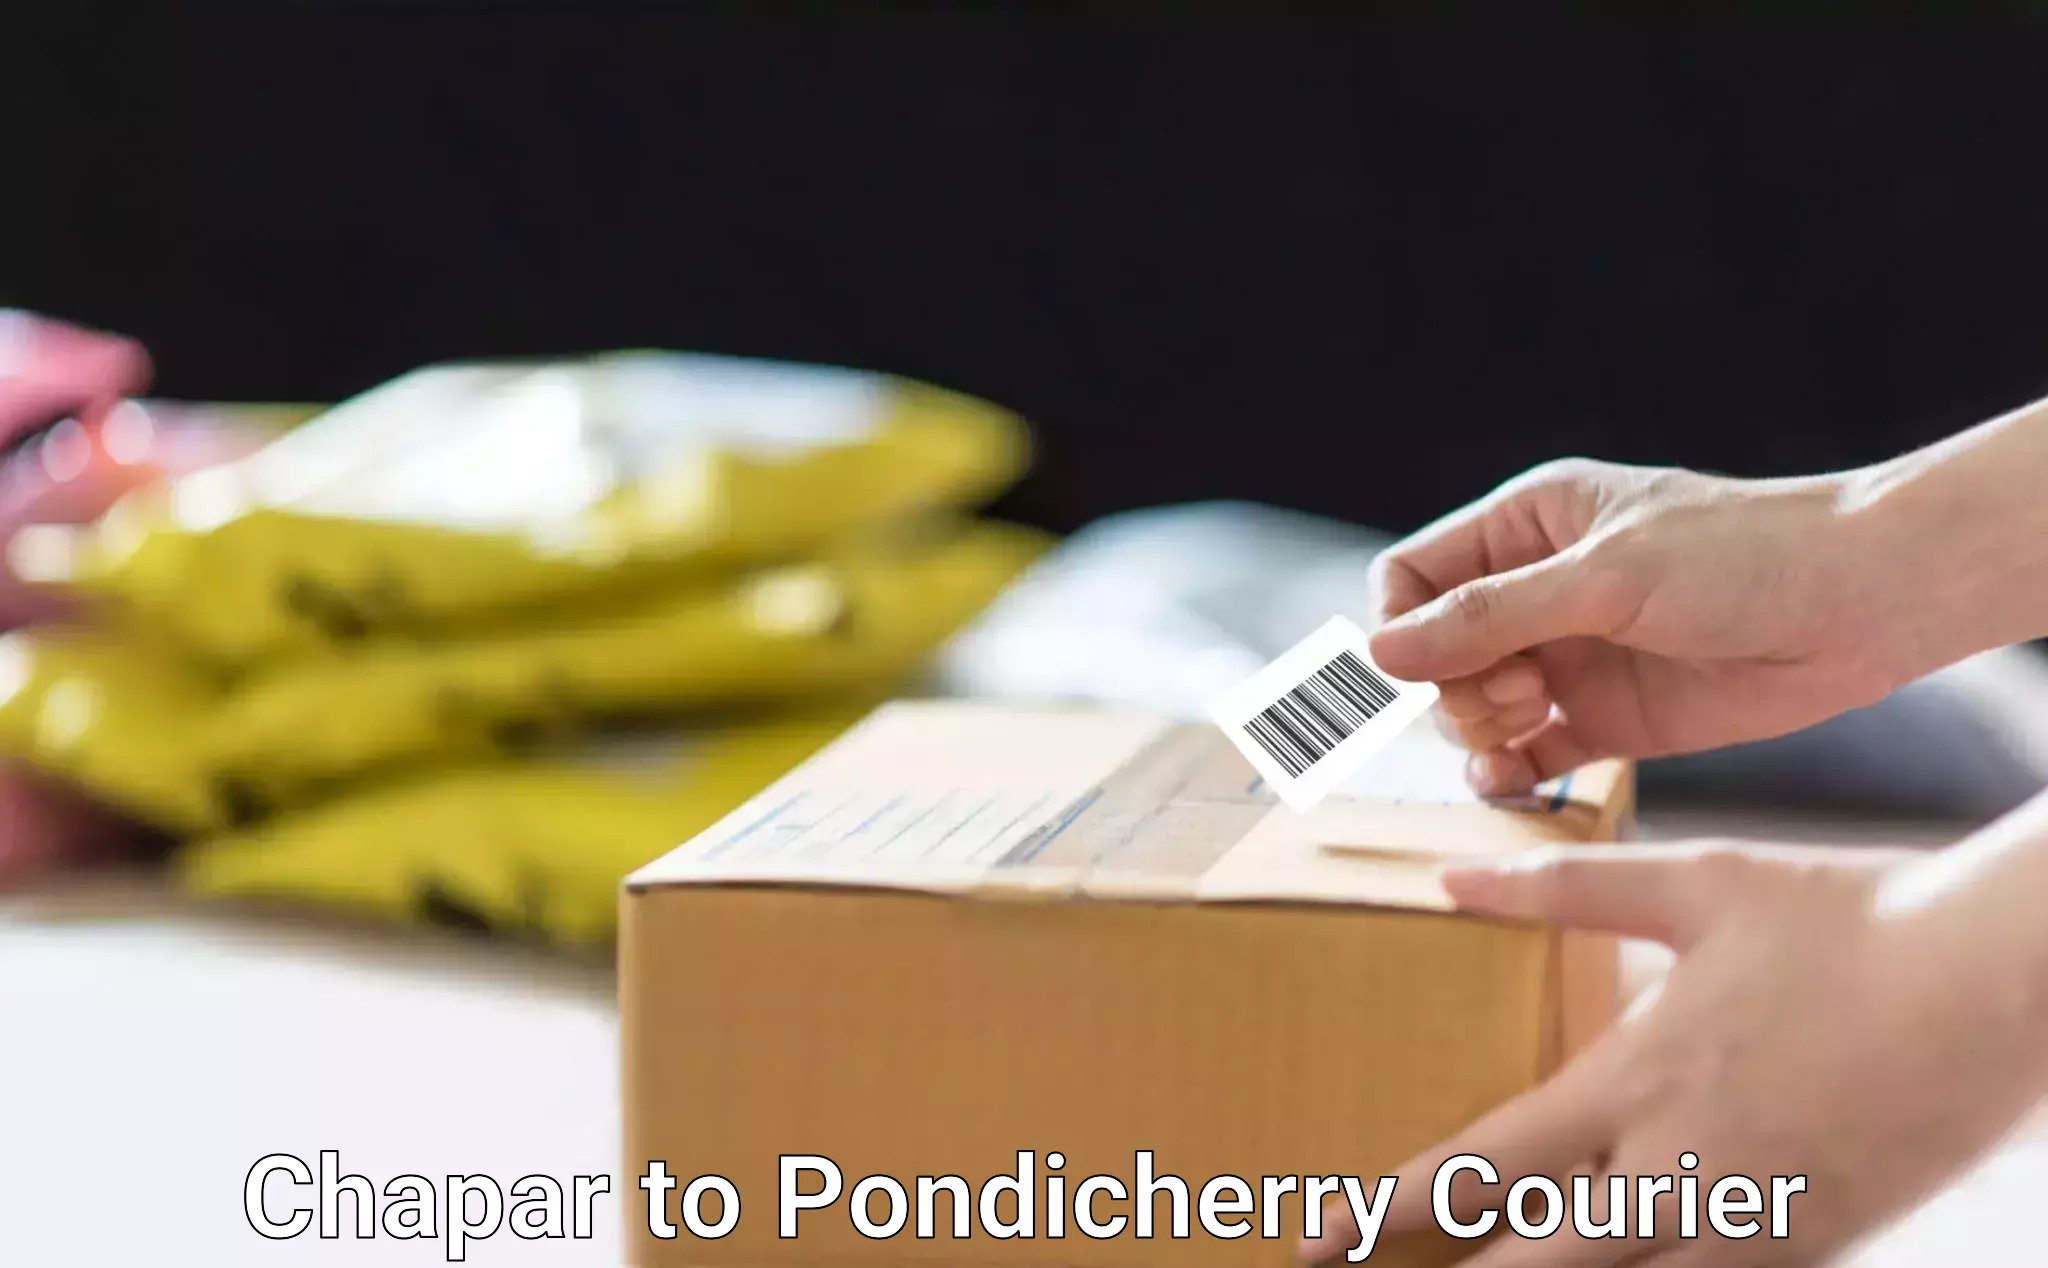 Courier service comparison Chapar to Pondicherry